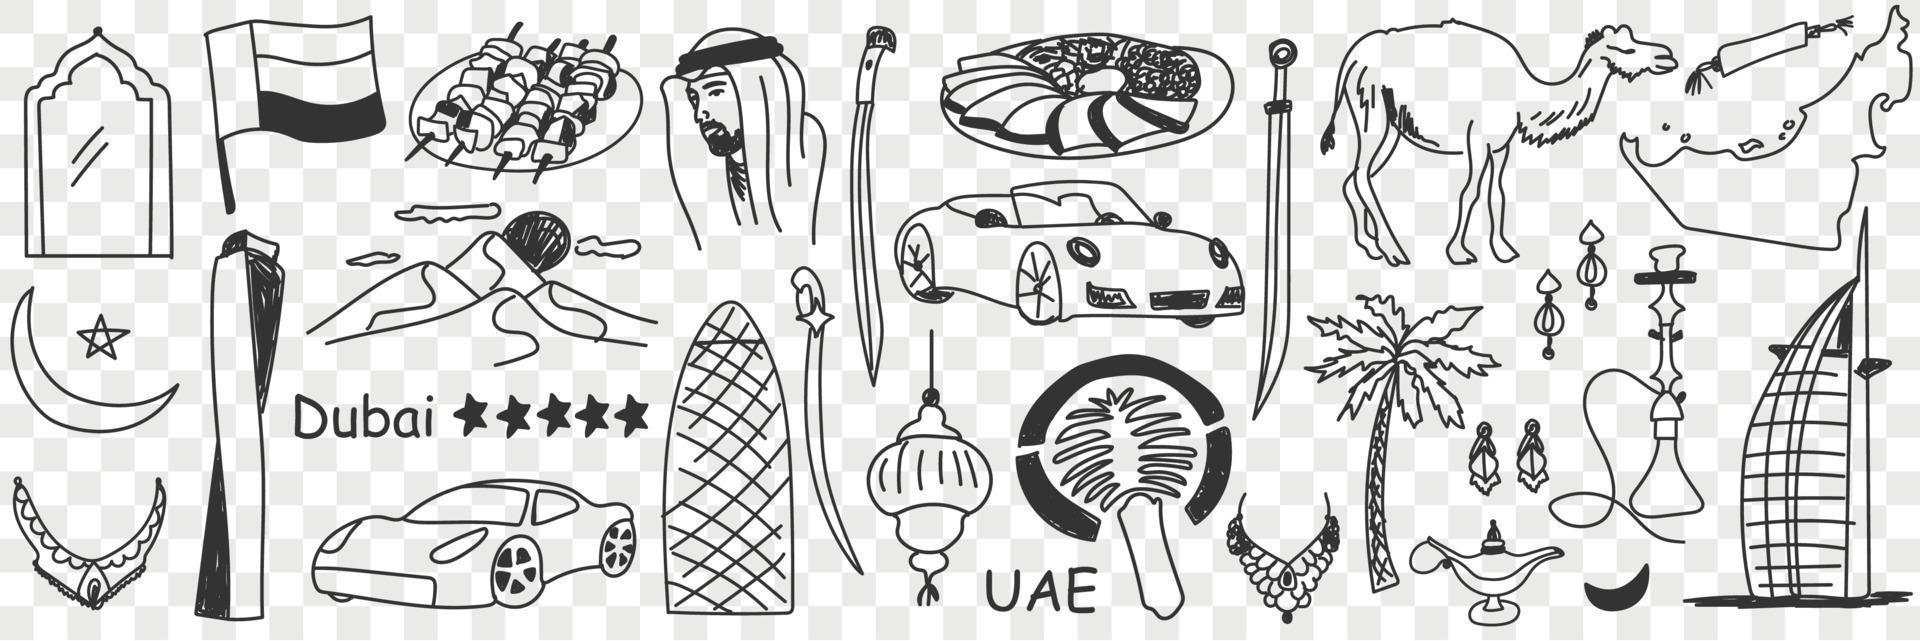 Arabisch Emirate Symbole Gekritzel Satz. Sammlung von Hand gezeichnet verschiedene vereinigt Arabisch Emirate Tourismus Zeichen traditionell Kultur und Reisen im Reihen isoliert auf transparent Hintergrund vektor